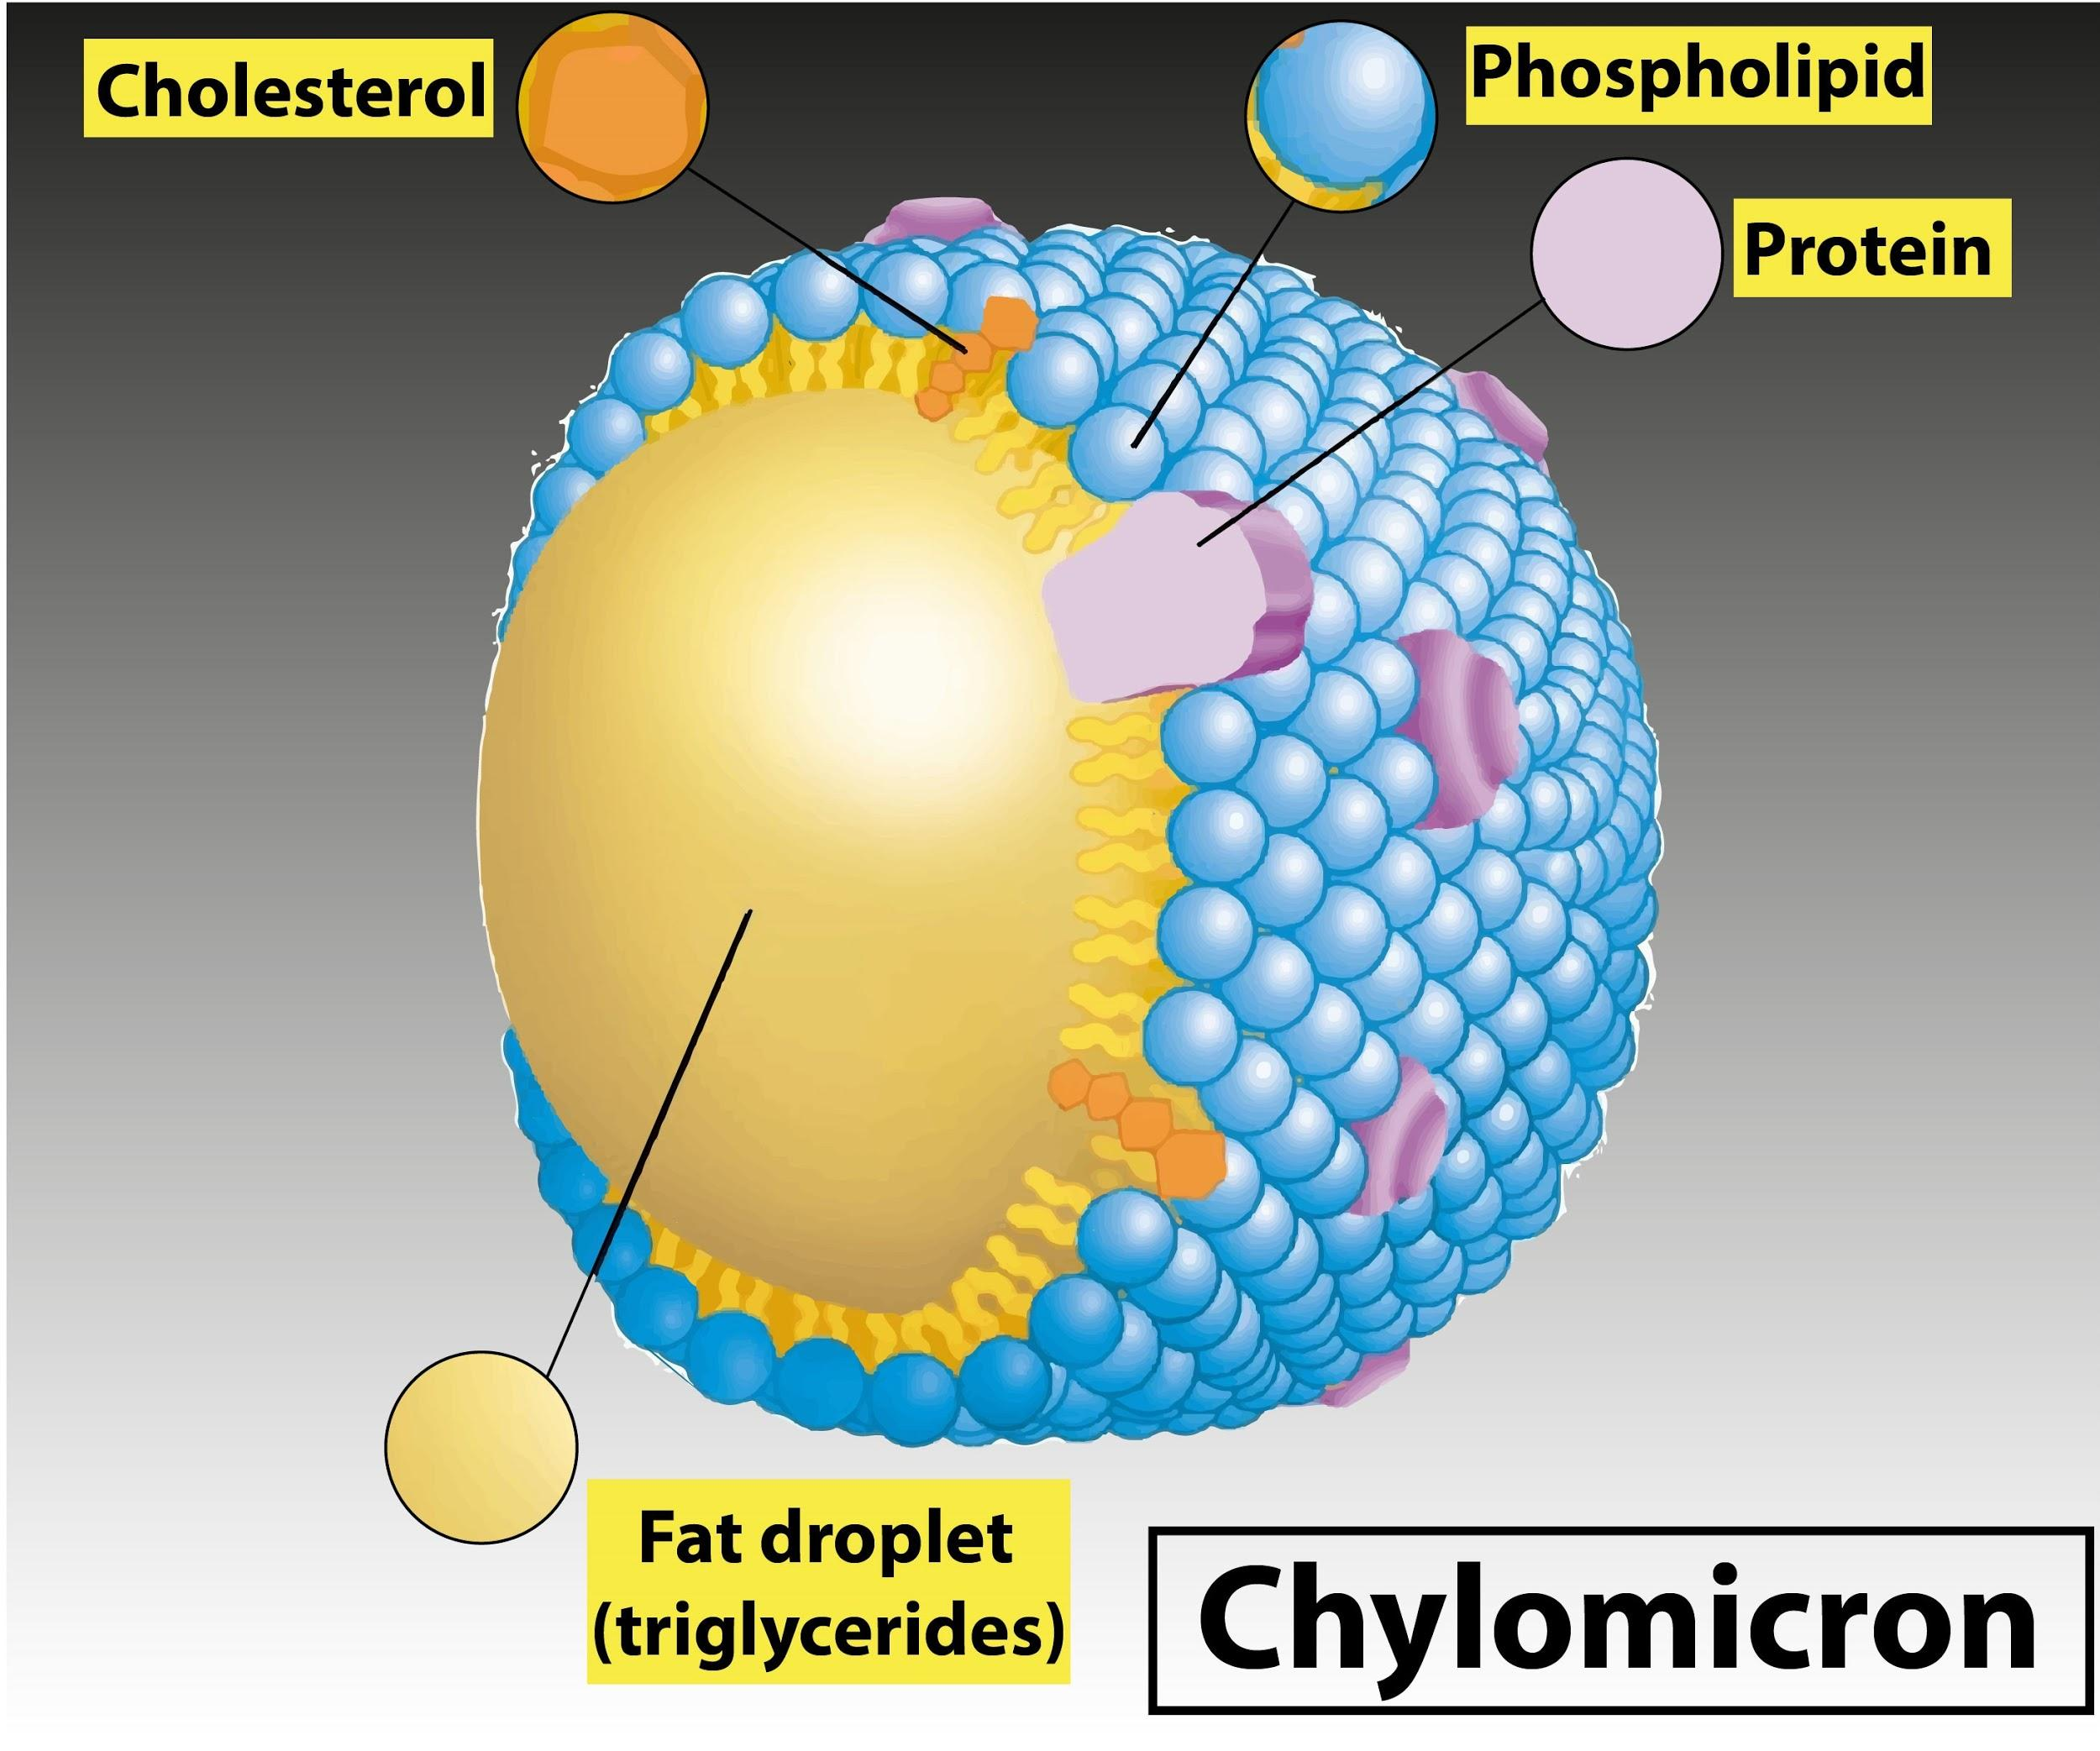 Chylomicron